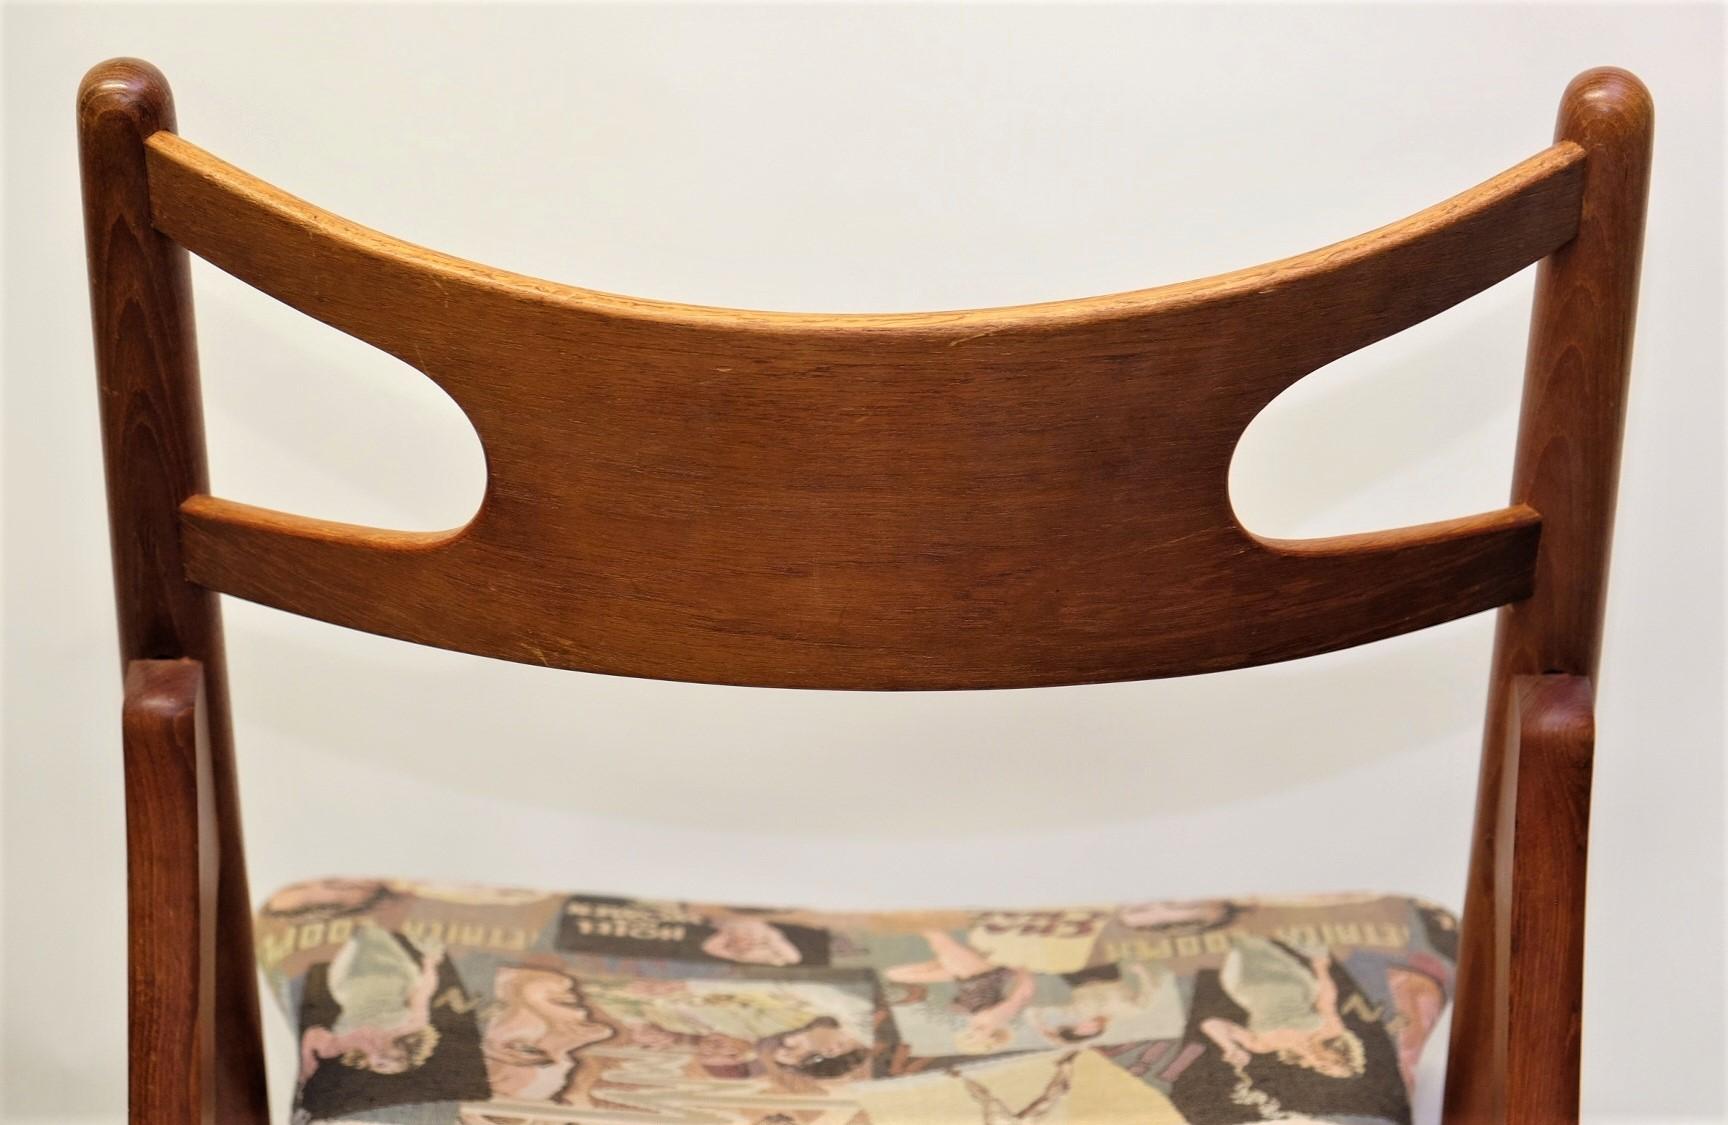 Hans J. Wegner Mid-Century Sawbuck Dining Chair CH29 Teak for Carl Hansen & Son For Sale 9